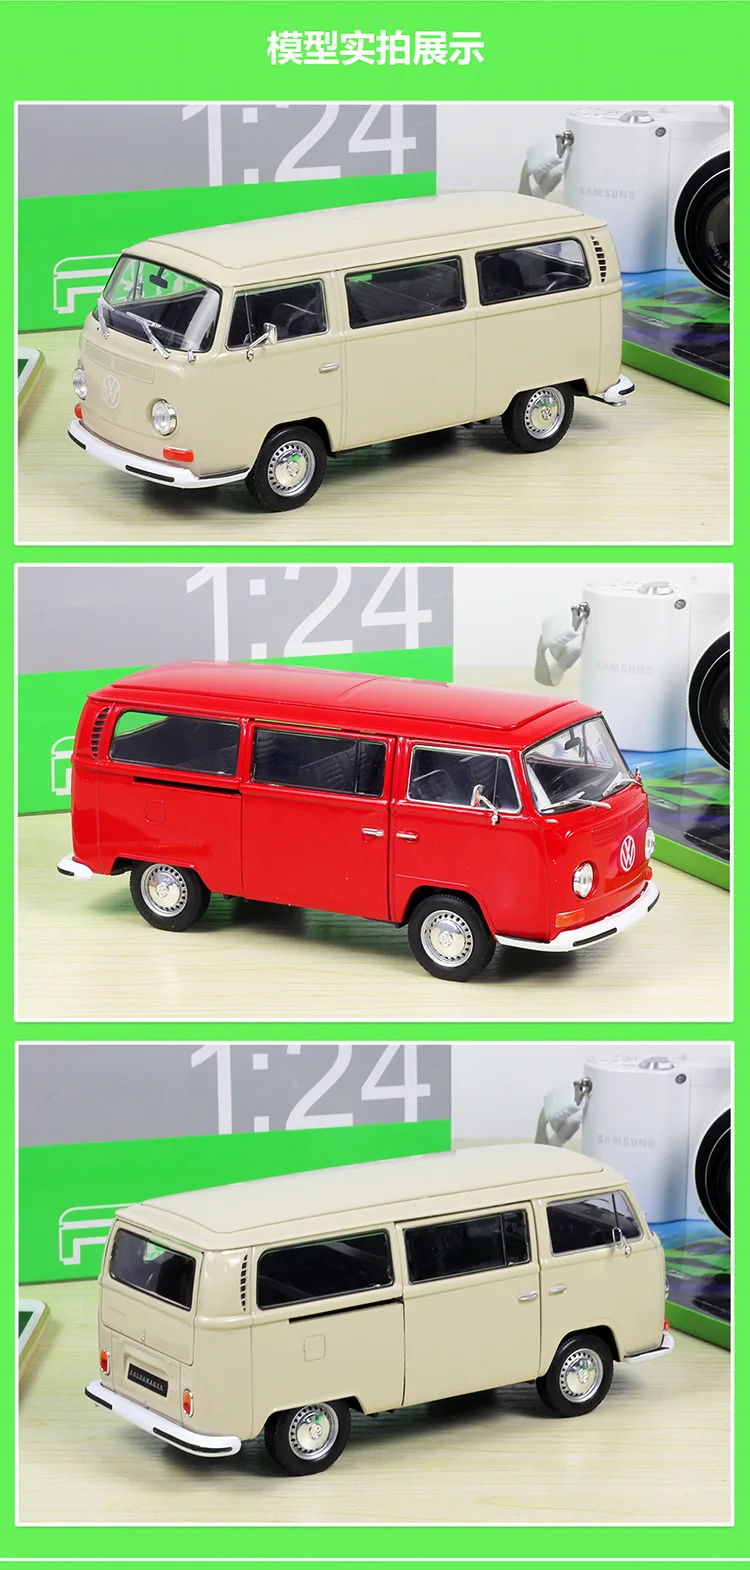 1:24 Welly модели автомобилей из сплава VW T2 1972 автобус литая модель автомобиля детские игрушки Рождественский подарок коллекция для взрослых